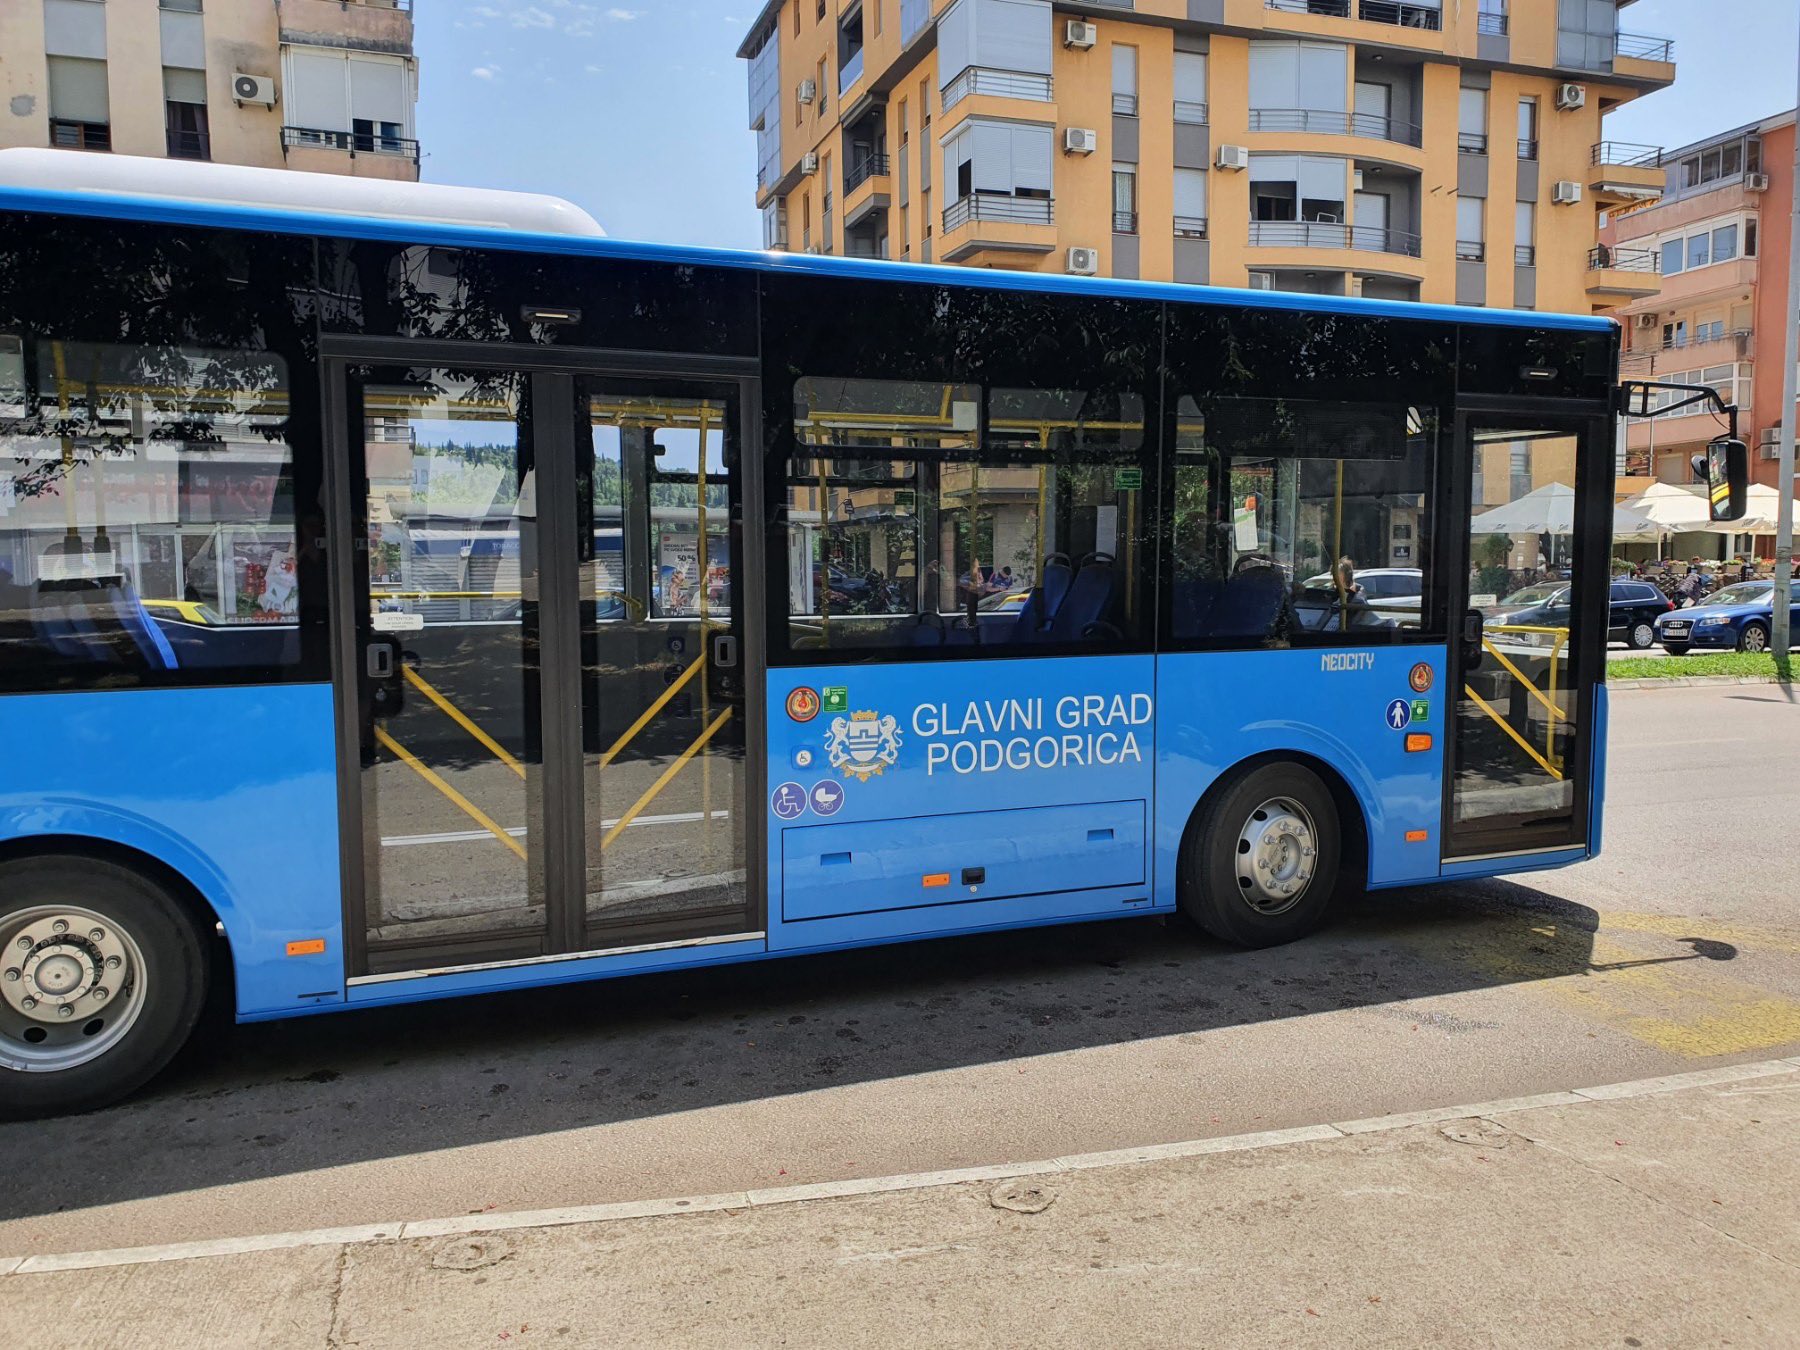 FOTO: Novi autobusi na podgoričkim ulicama, besplatna vožnja do 5. jula